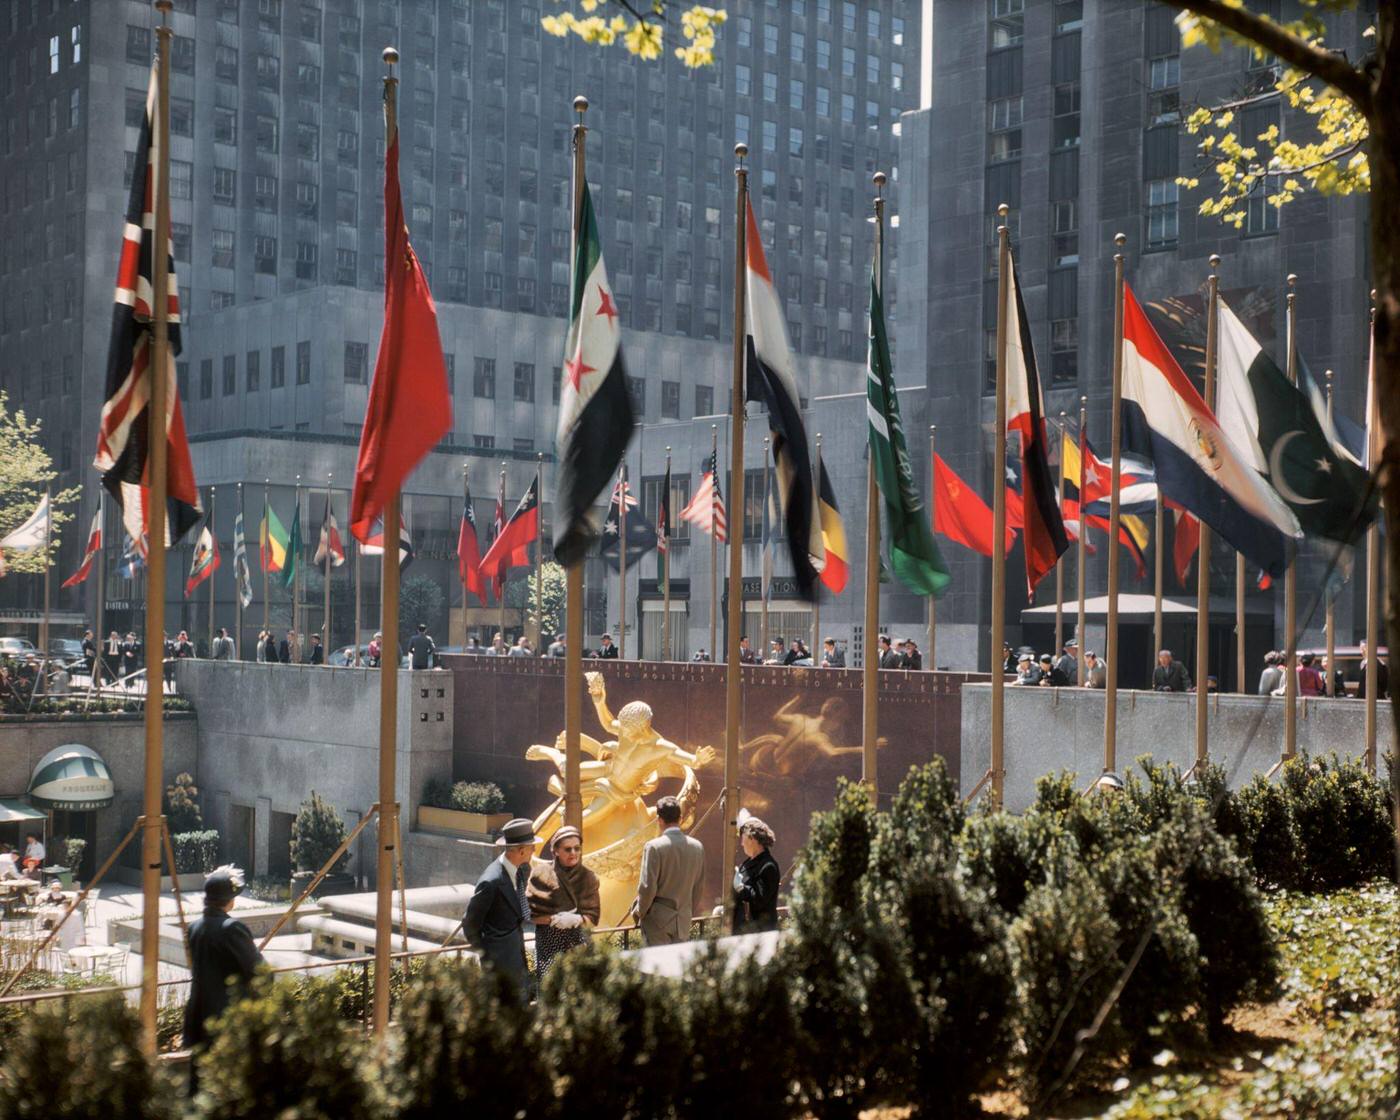 Sunken Plaza, Rockefeller Center, Manhattan, 1950S.